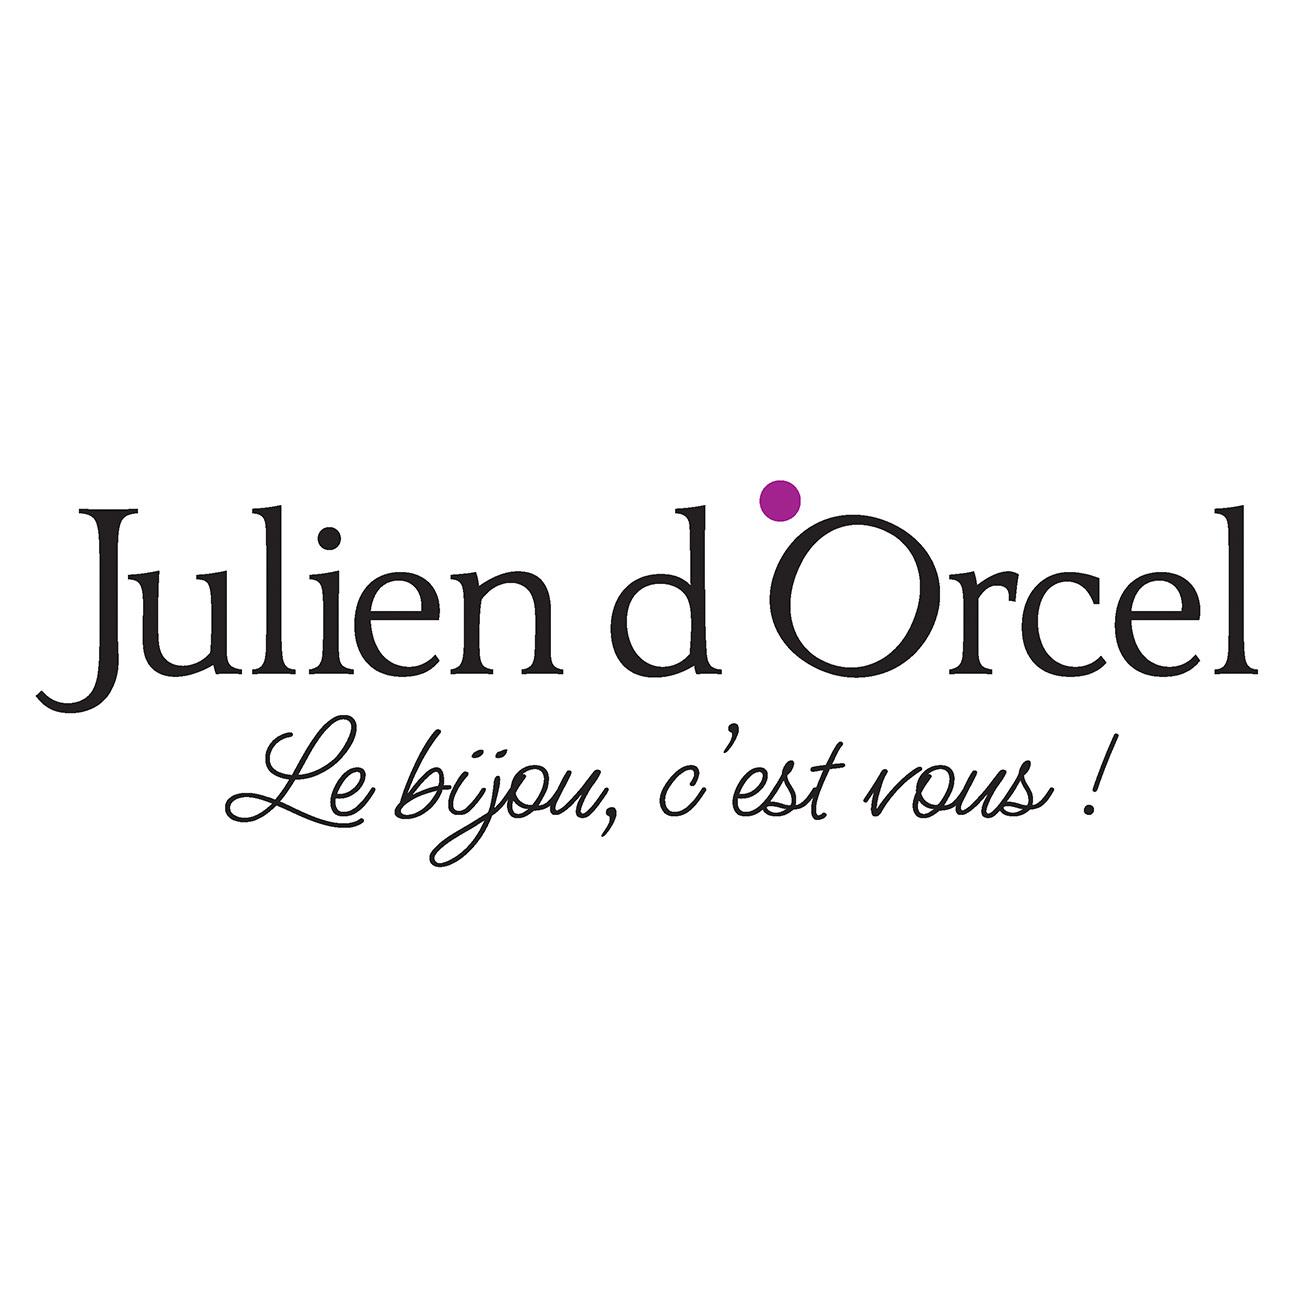 Julien D'orcel Dury Dury